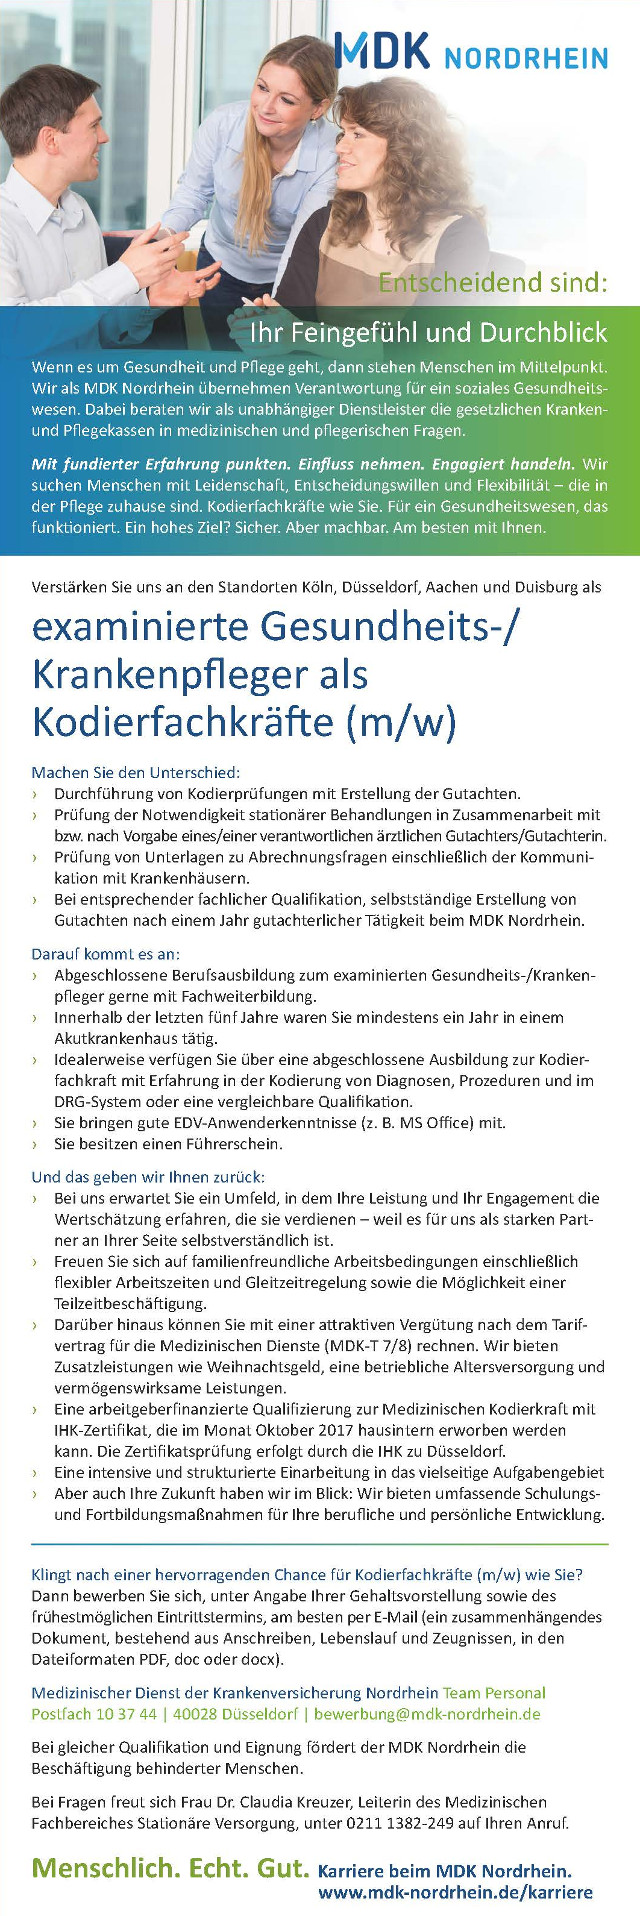 Medizinischer Dienst der Krankenversicherung Nordrhein, Düsseldorf: Examinierte Gesundheits-/Krankenpfleger als Kodierfachkräfte (m/w)